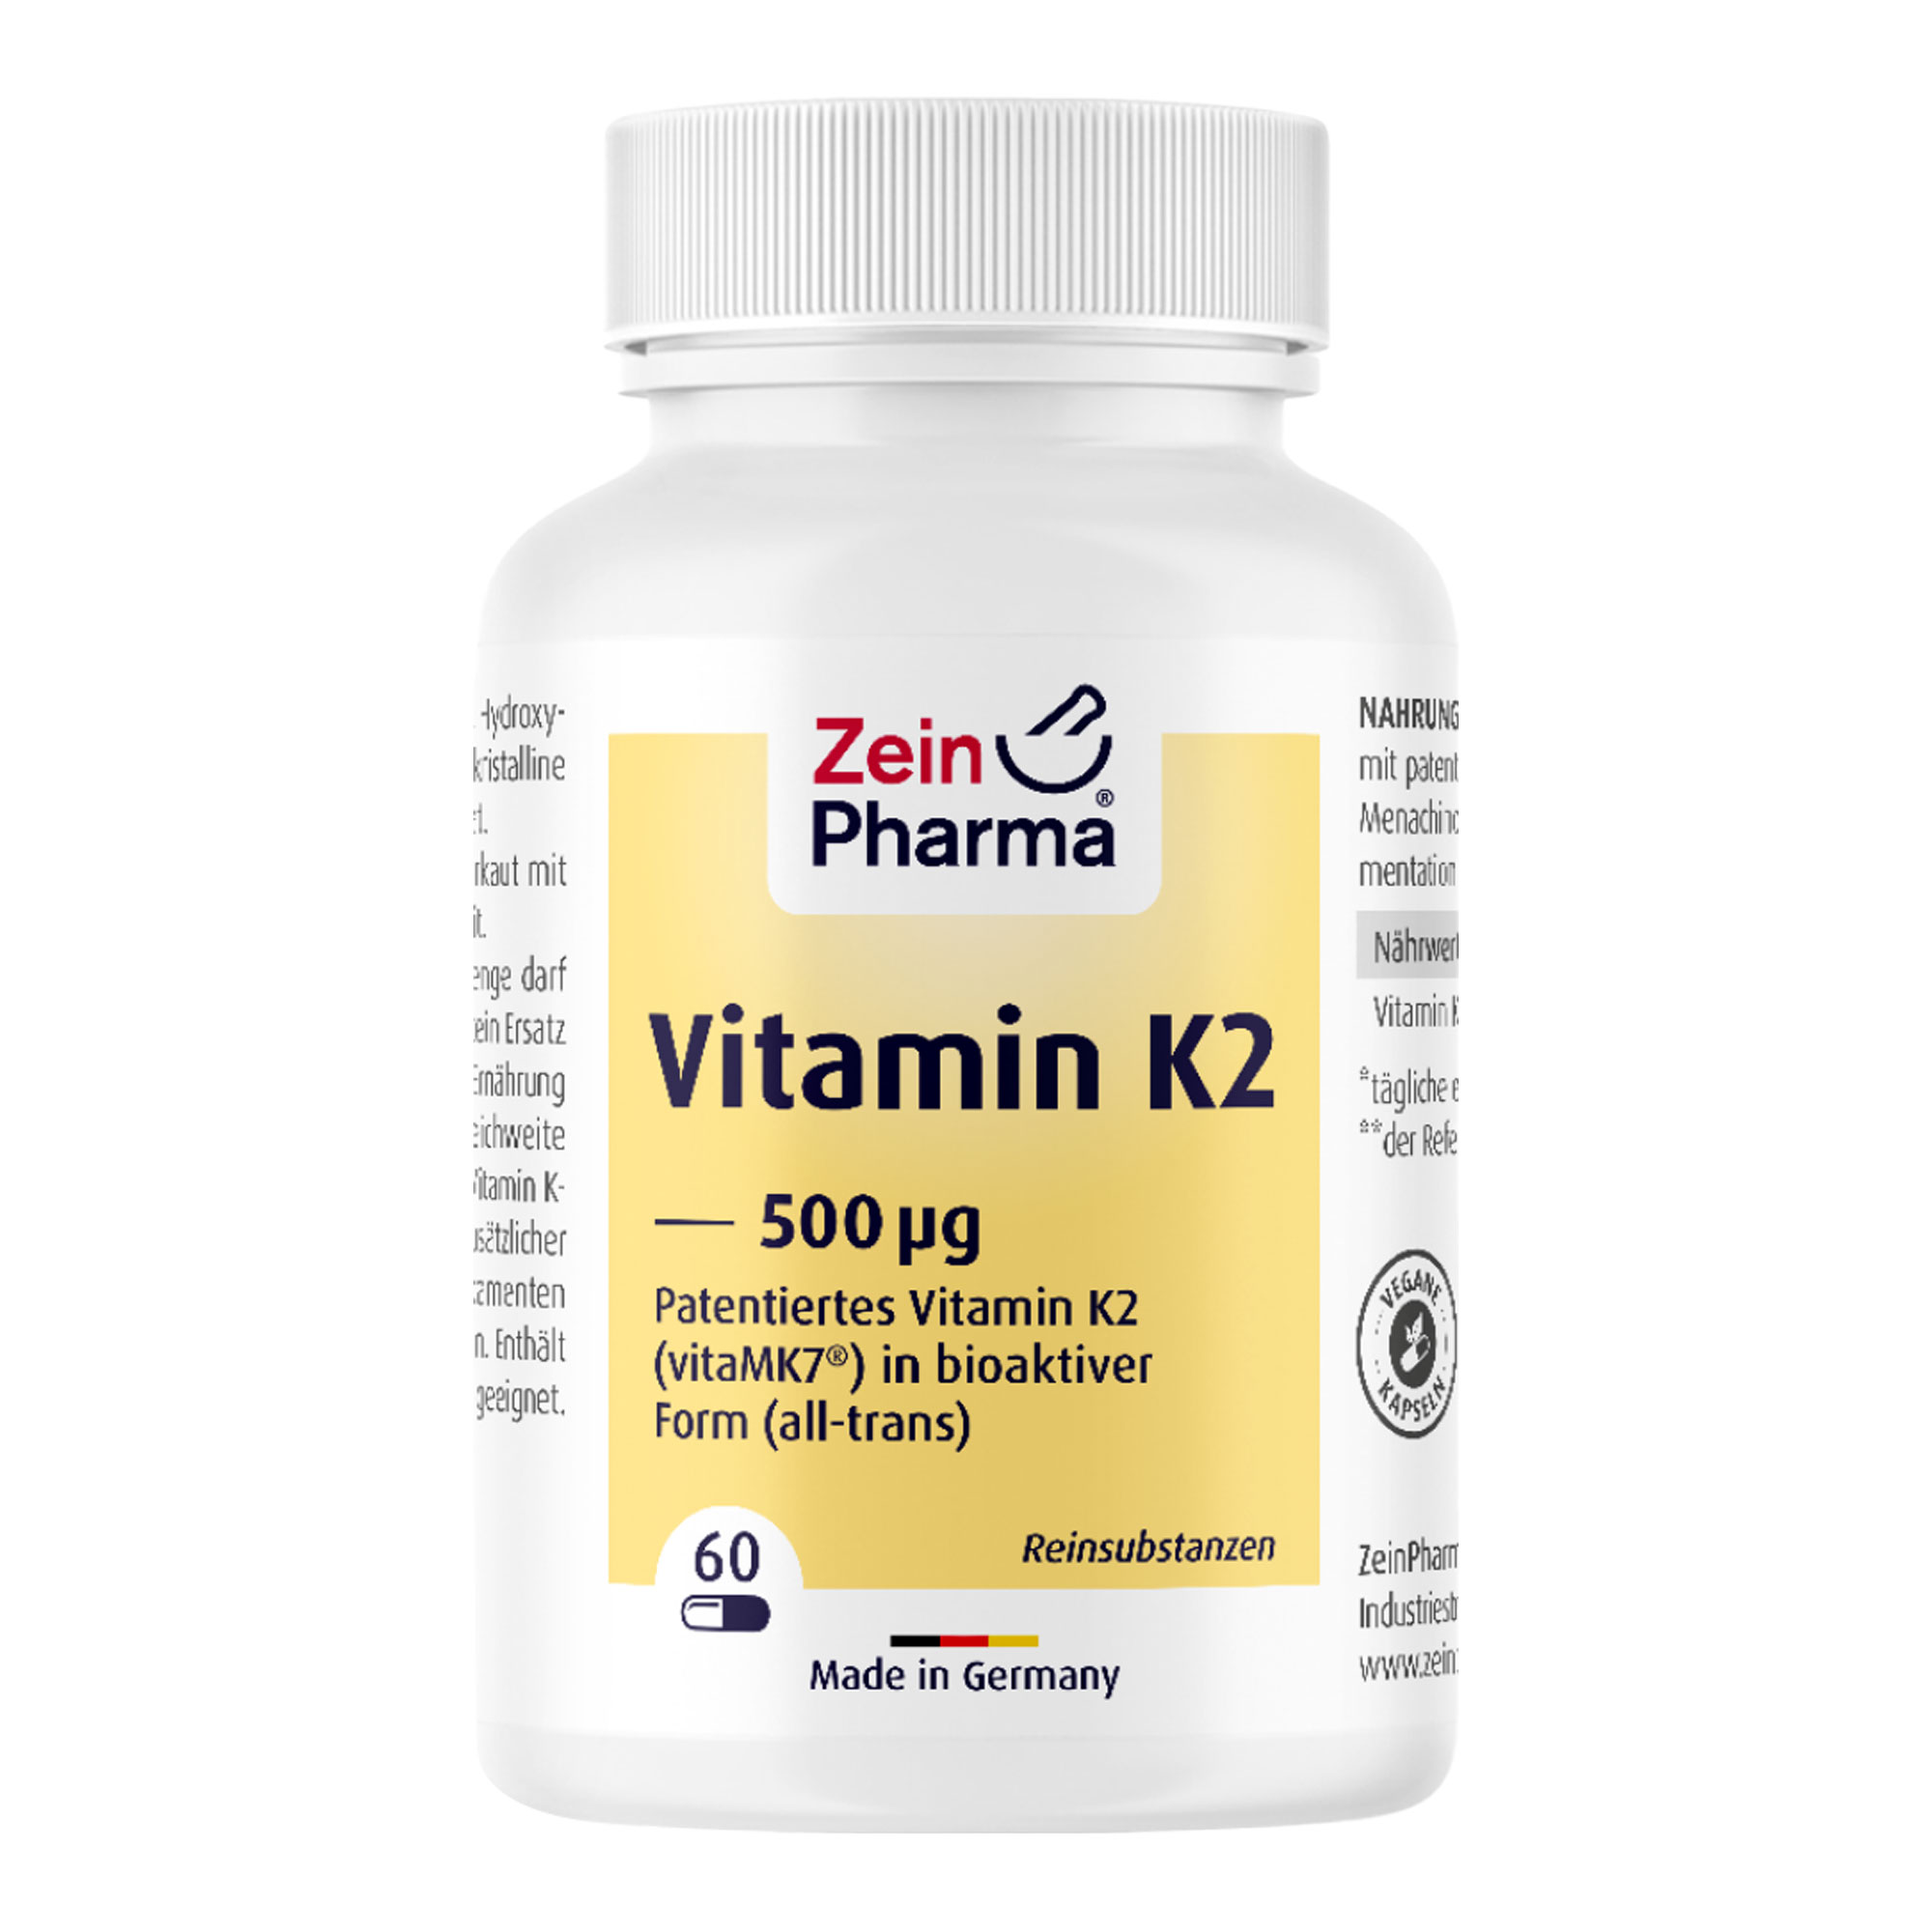 Nahrungsergänzungsmittel mit patentiertem Vitamin K2 (vitaMK7®) als Menachinon-7 (all-trans) aus natürlicher Fermentation in veganen Kapseln.